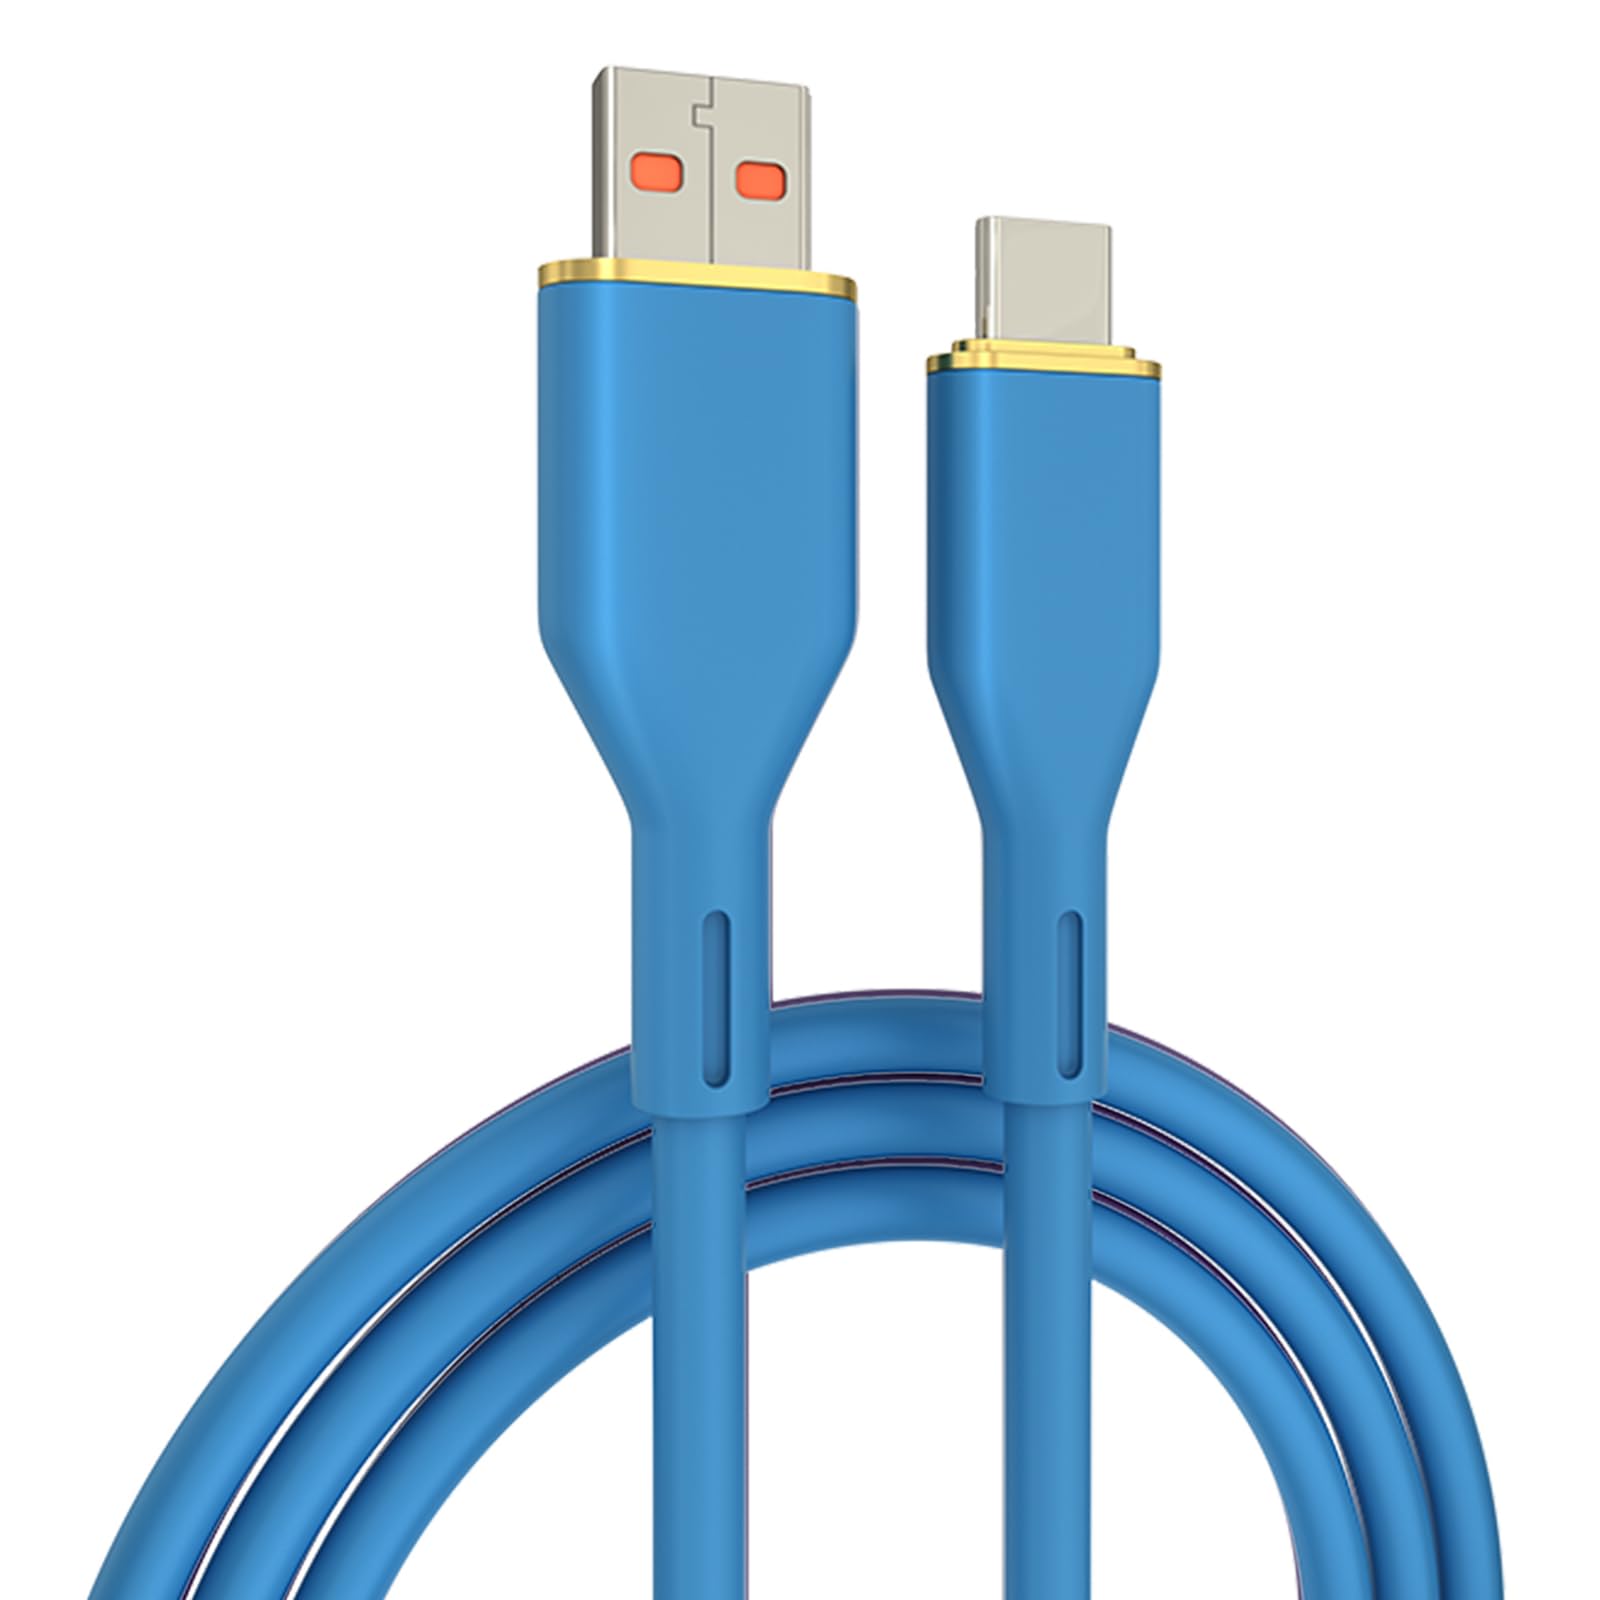 USB C 型电缆，USB A 至 USB C 5A 快速充电（3.3 英尺 1 包）充电线兼容三星 Galaxy S10 S9 S8 Plus、Note 9 8、A11 A20 A51、LG G6 G7 V30 V35、Moto Z2 Z3(图6)